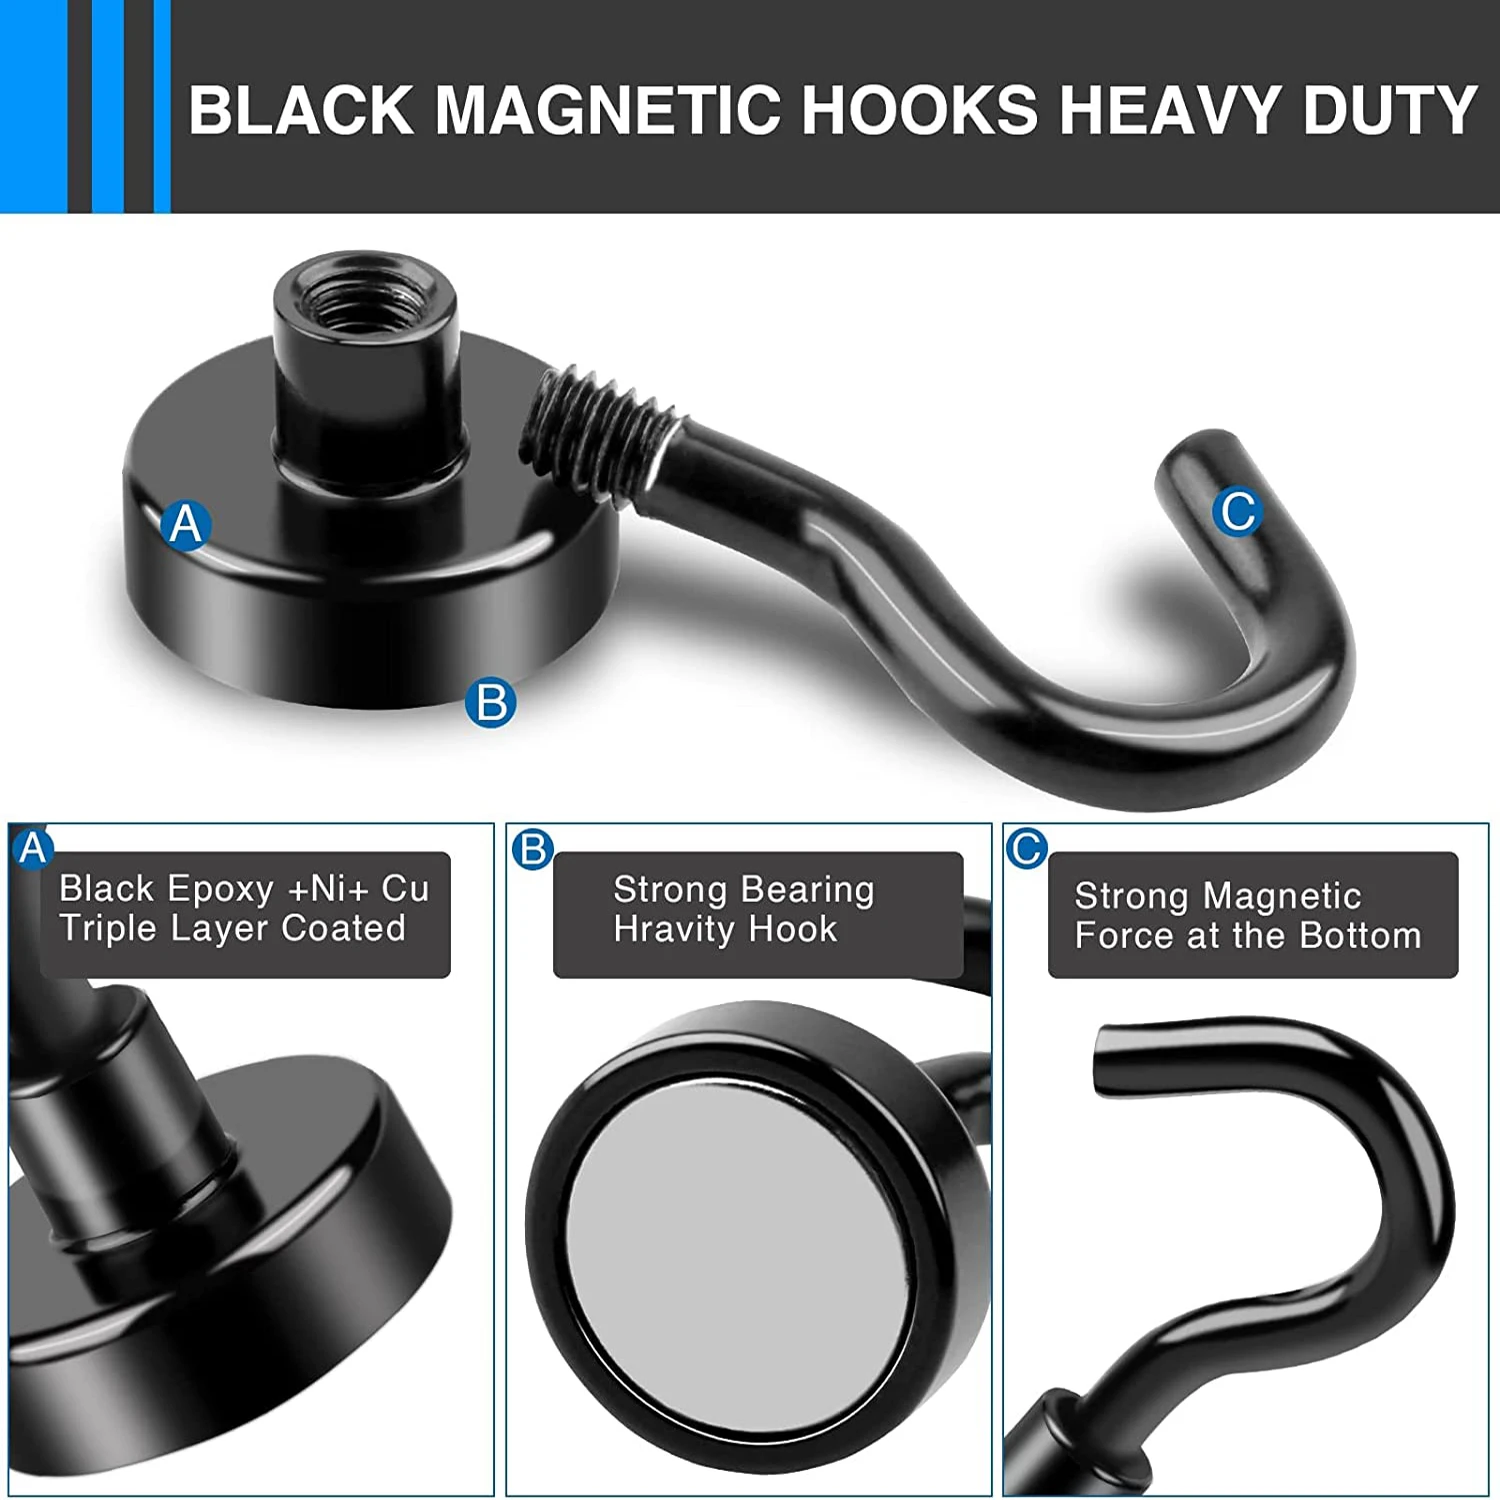 Black Magnetic Hooks Heavy Duty Utility Hooks Rare Earth Neodymium Magnet Hooks Hanging Nickel Coating Hanger for Home/Kitchen